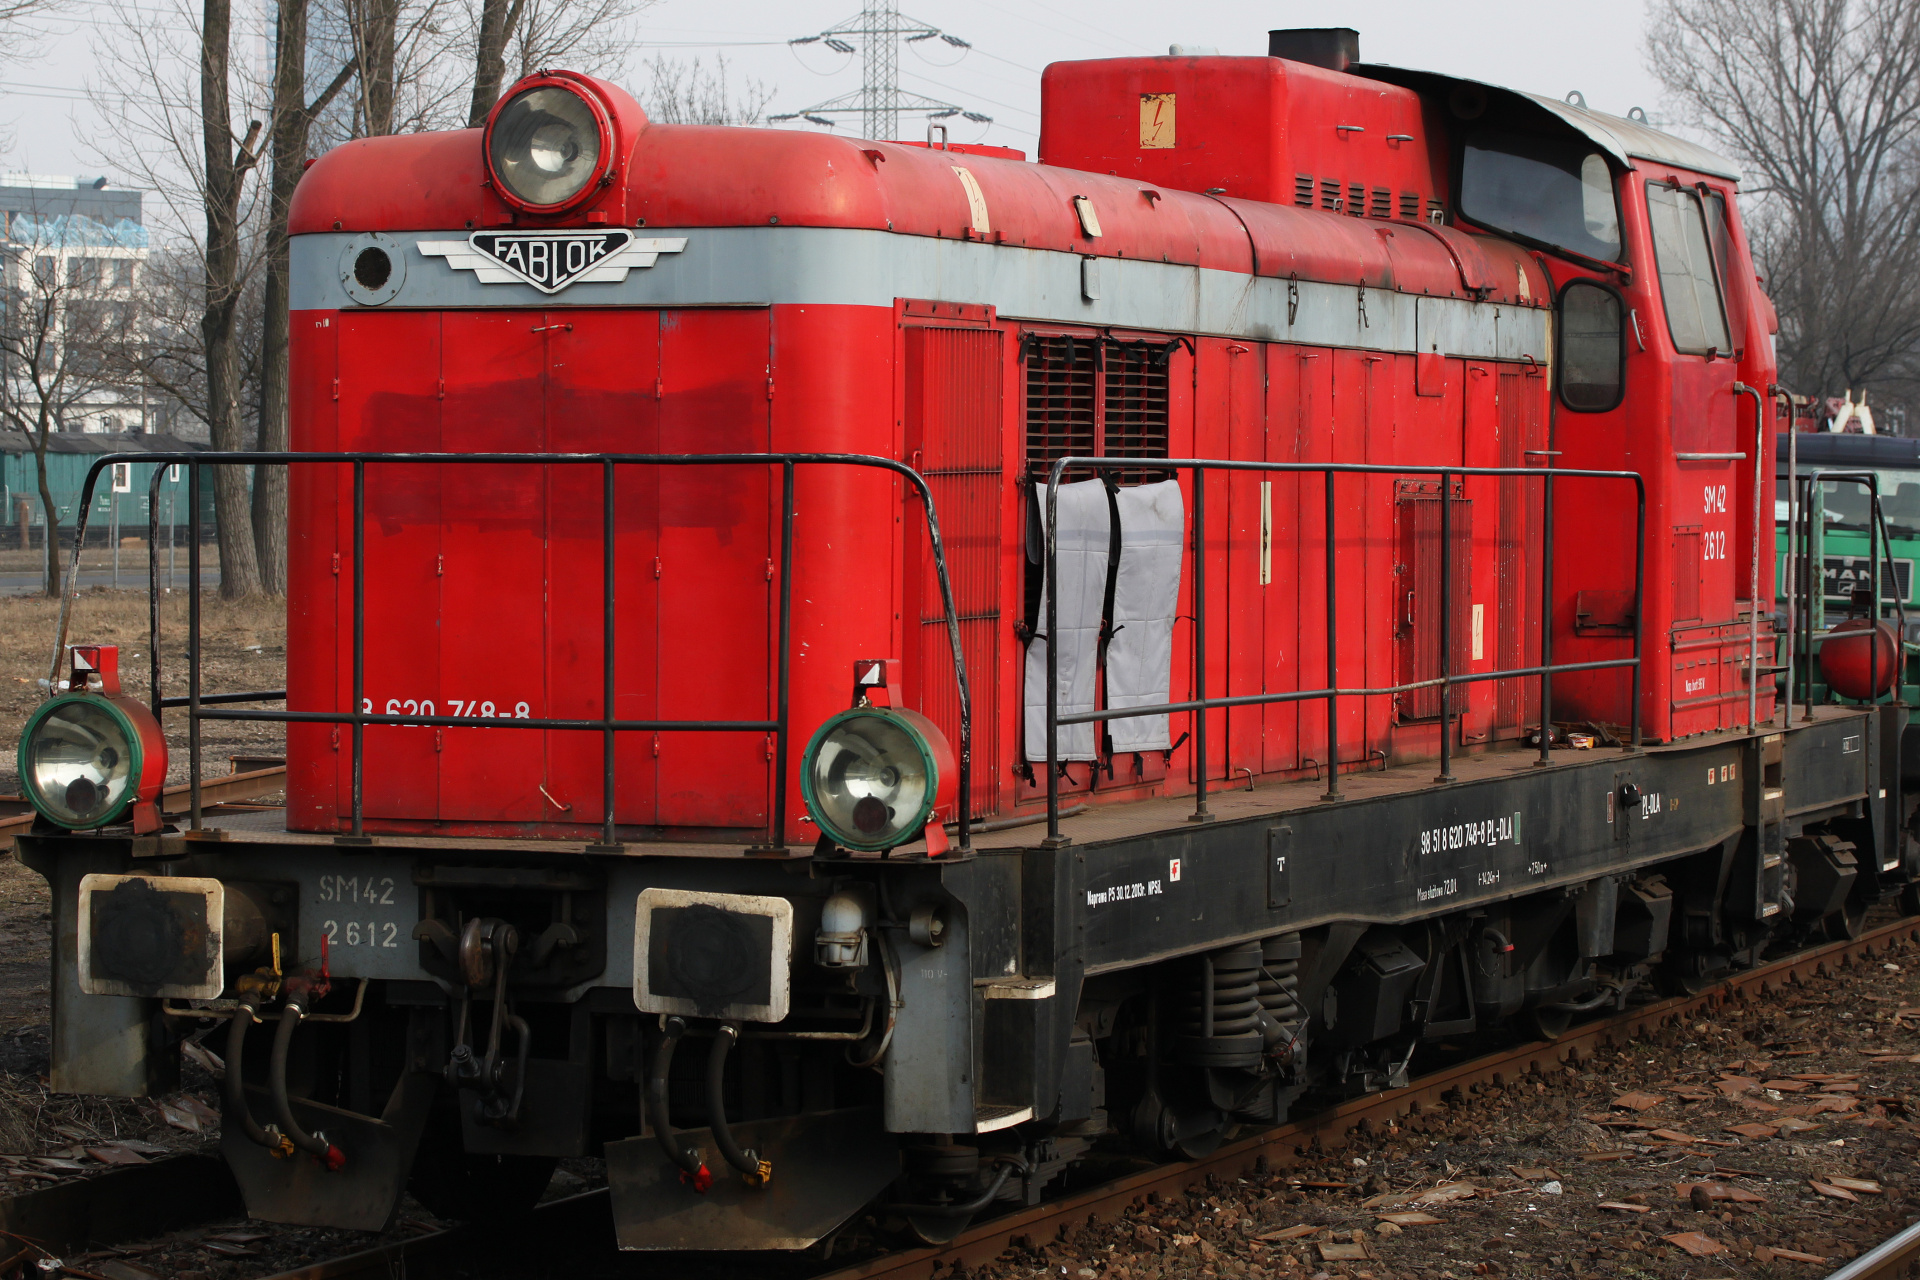 SM42-2612 (Vehicles » Trains and Locomotives » Fablok 6D)